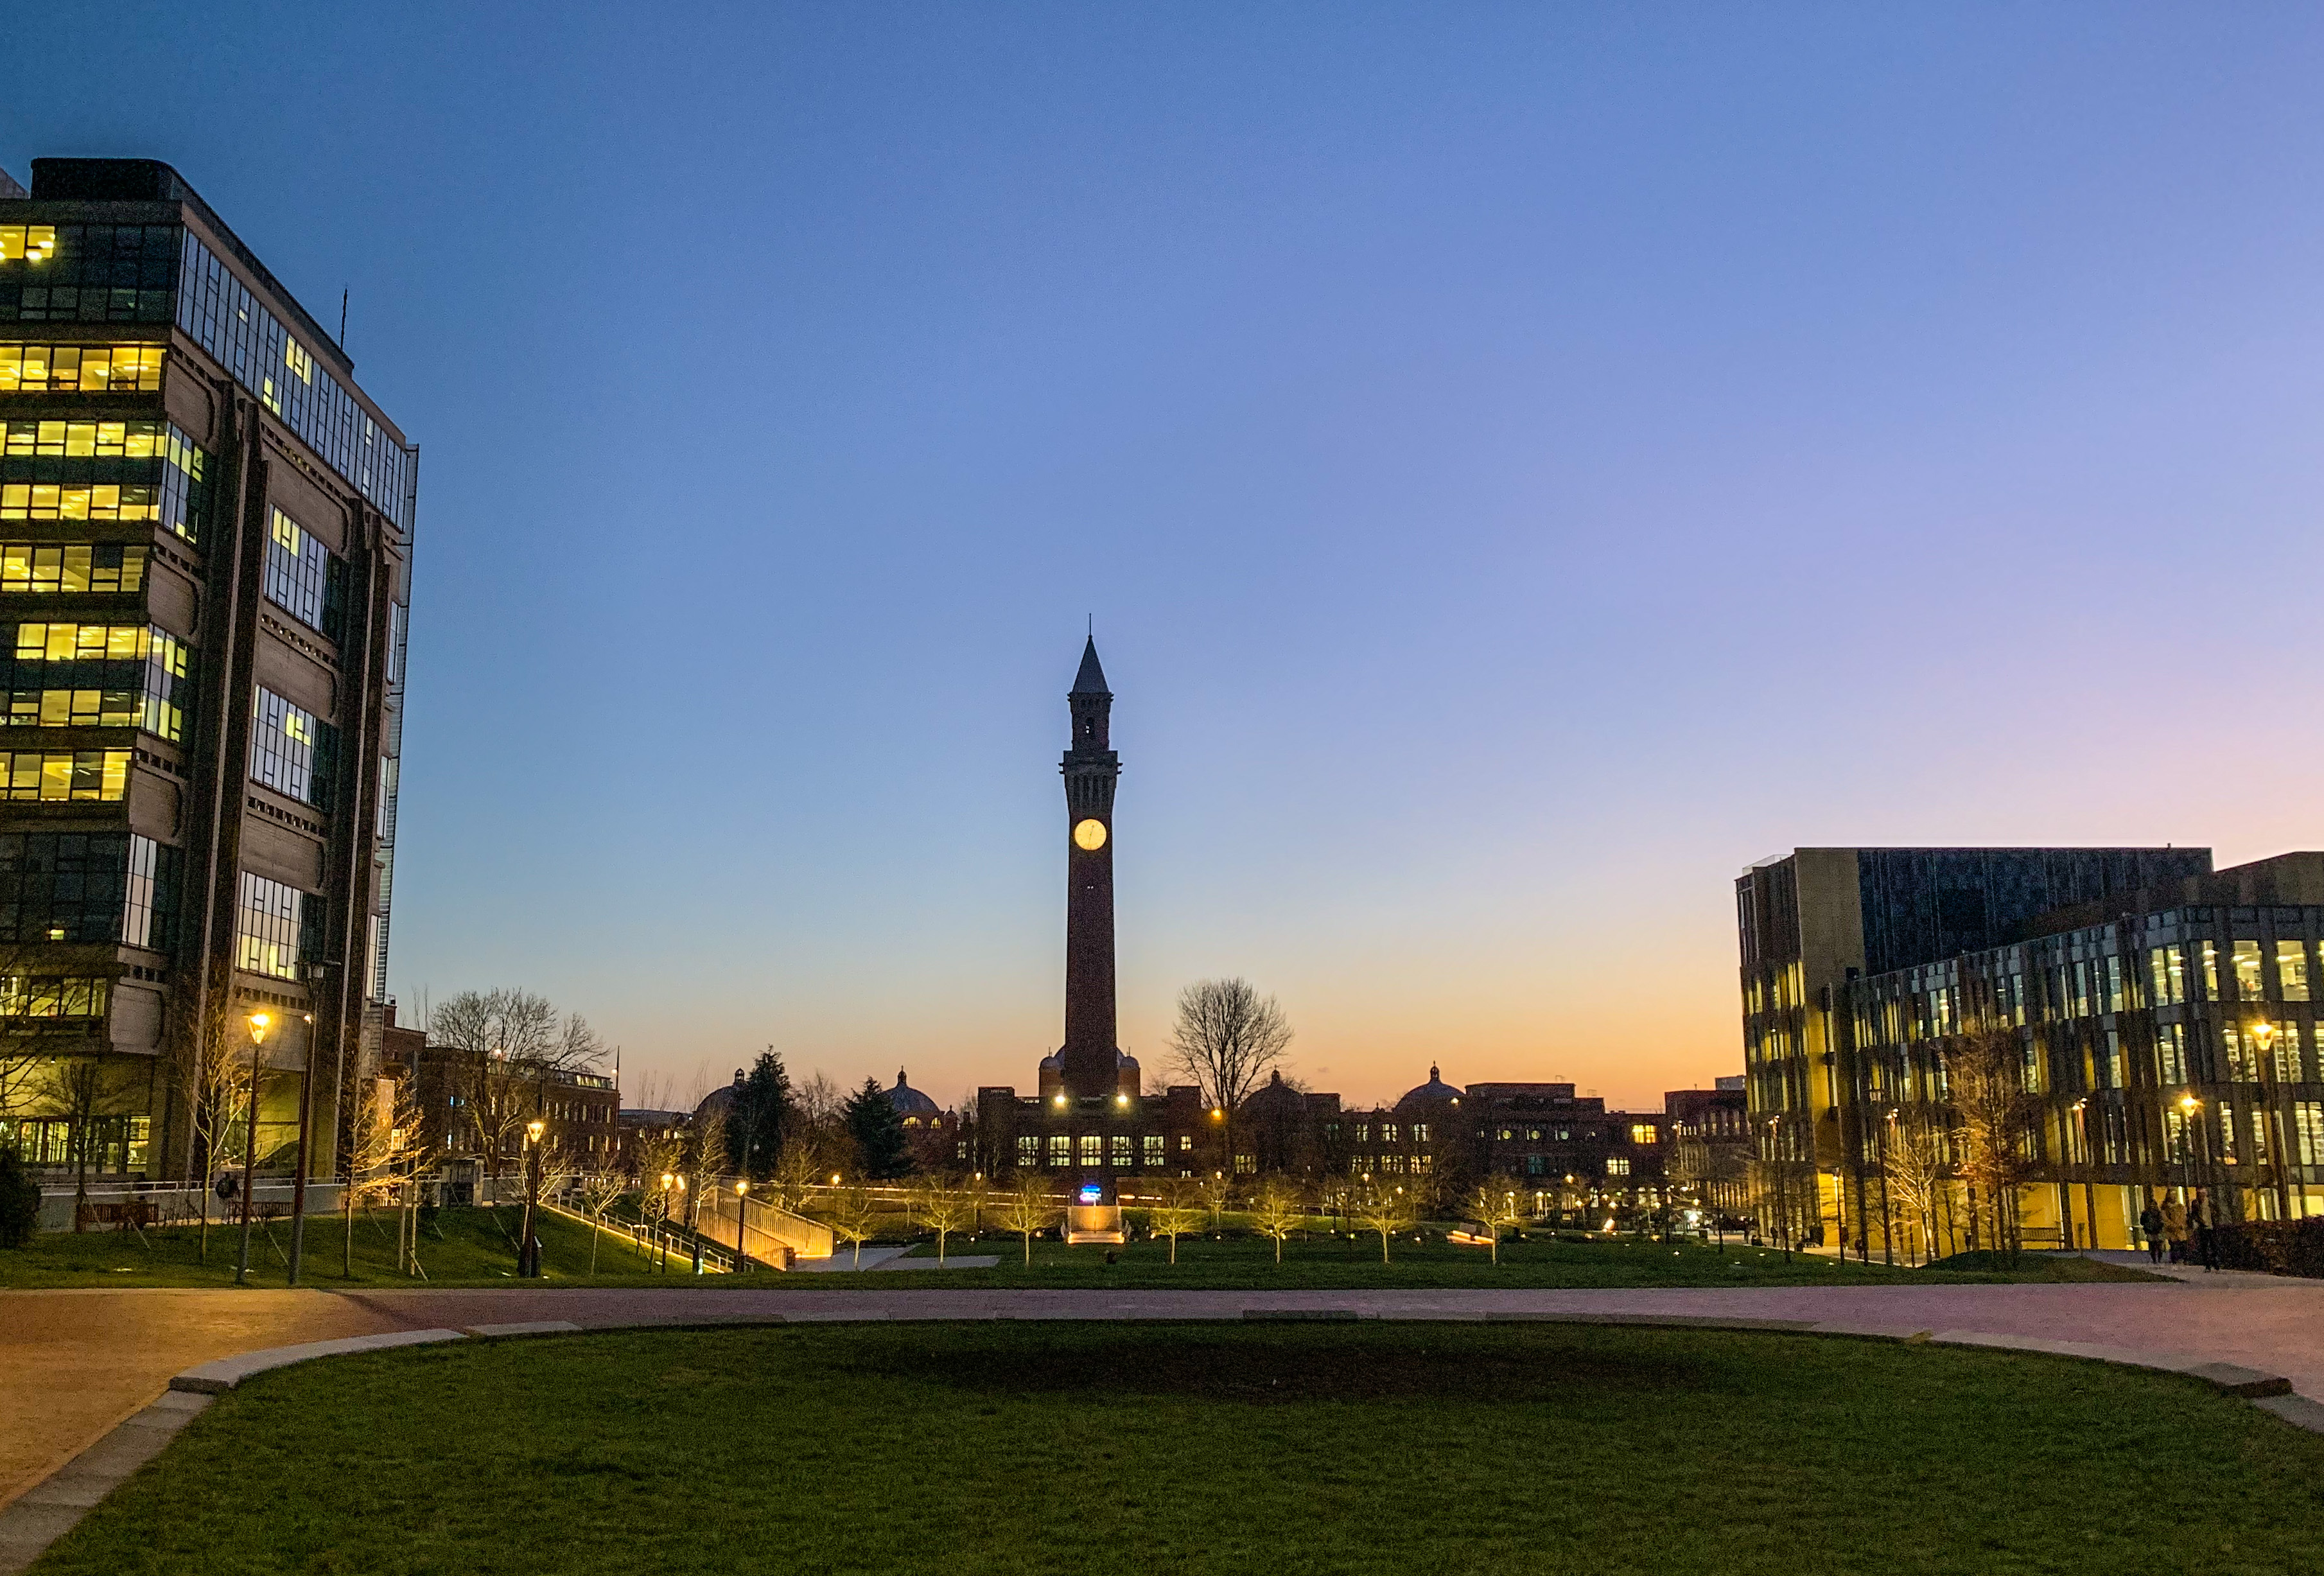 University of Birmingham campus at night.